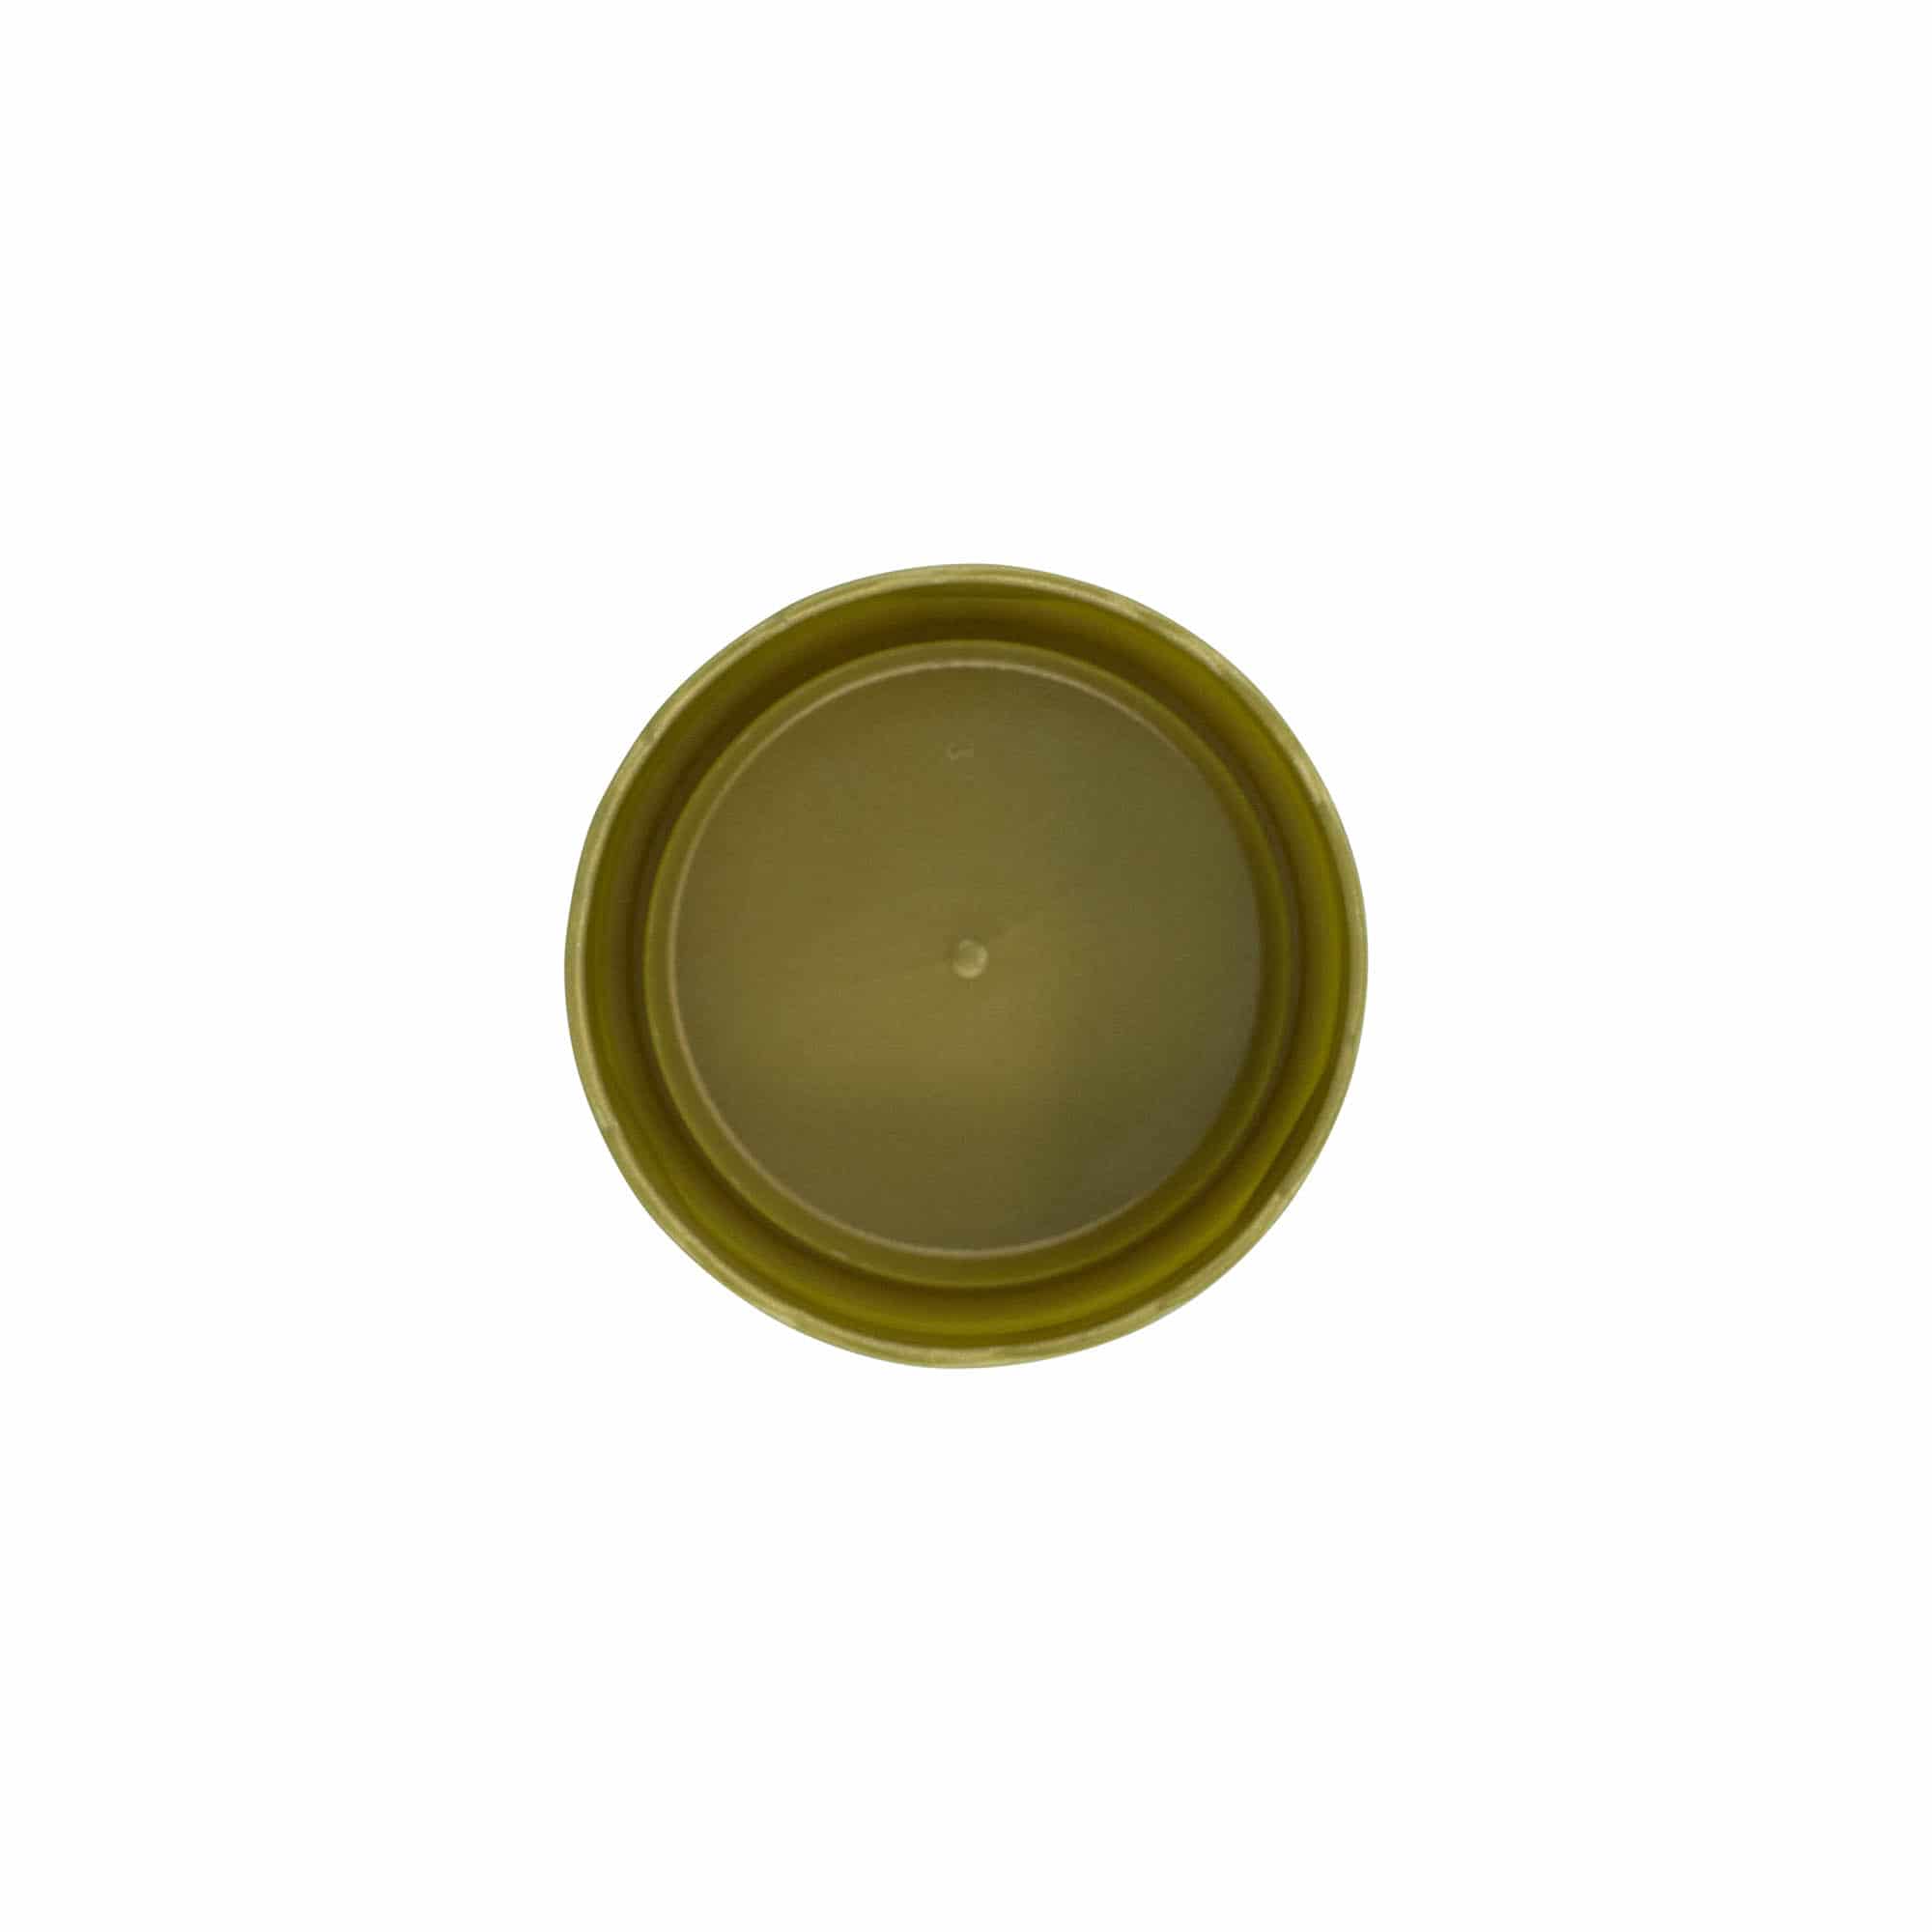 Couvercle-cloche pour pot en céramique à col étroit, plastique PEHD, doré